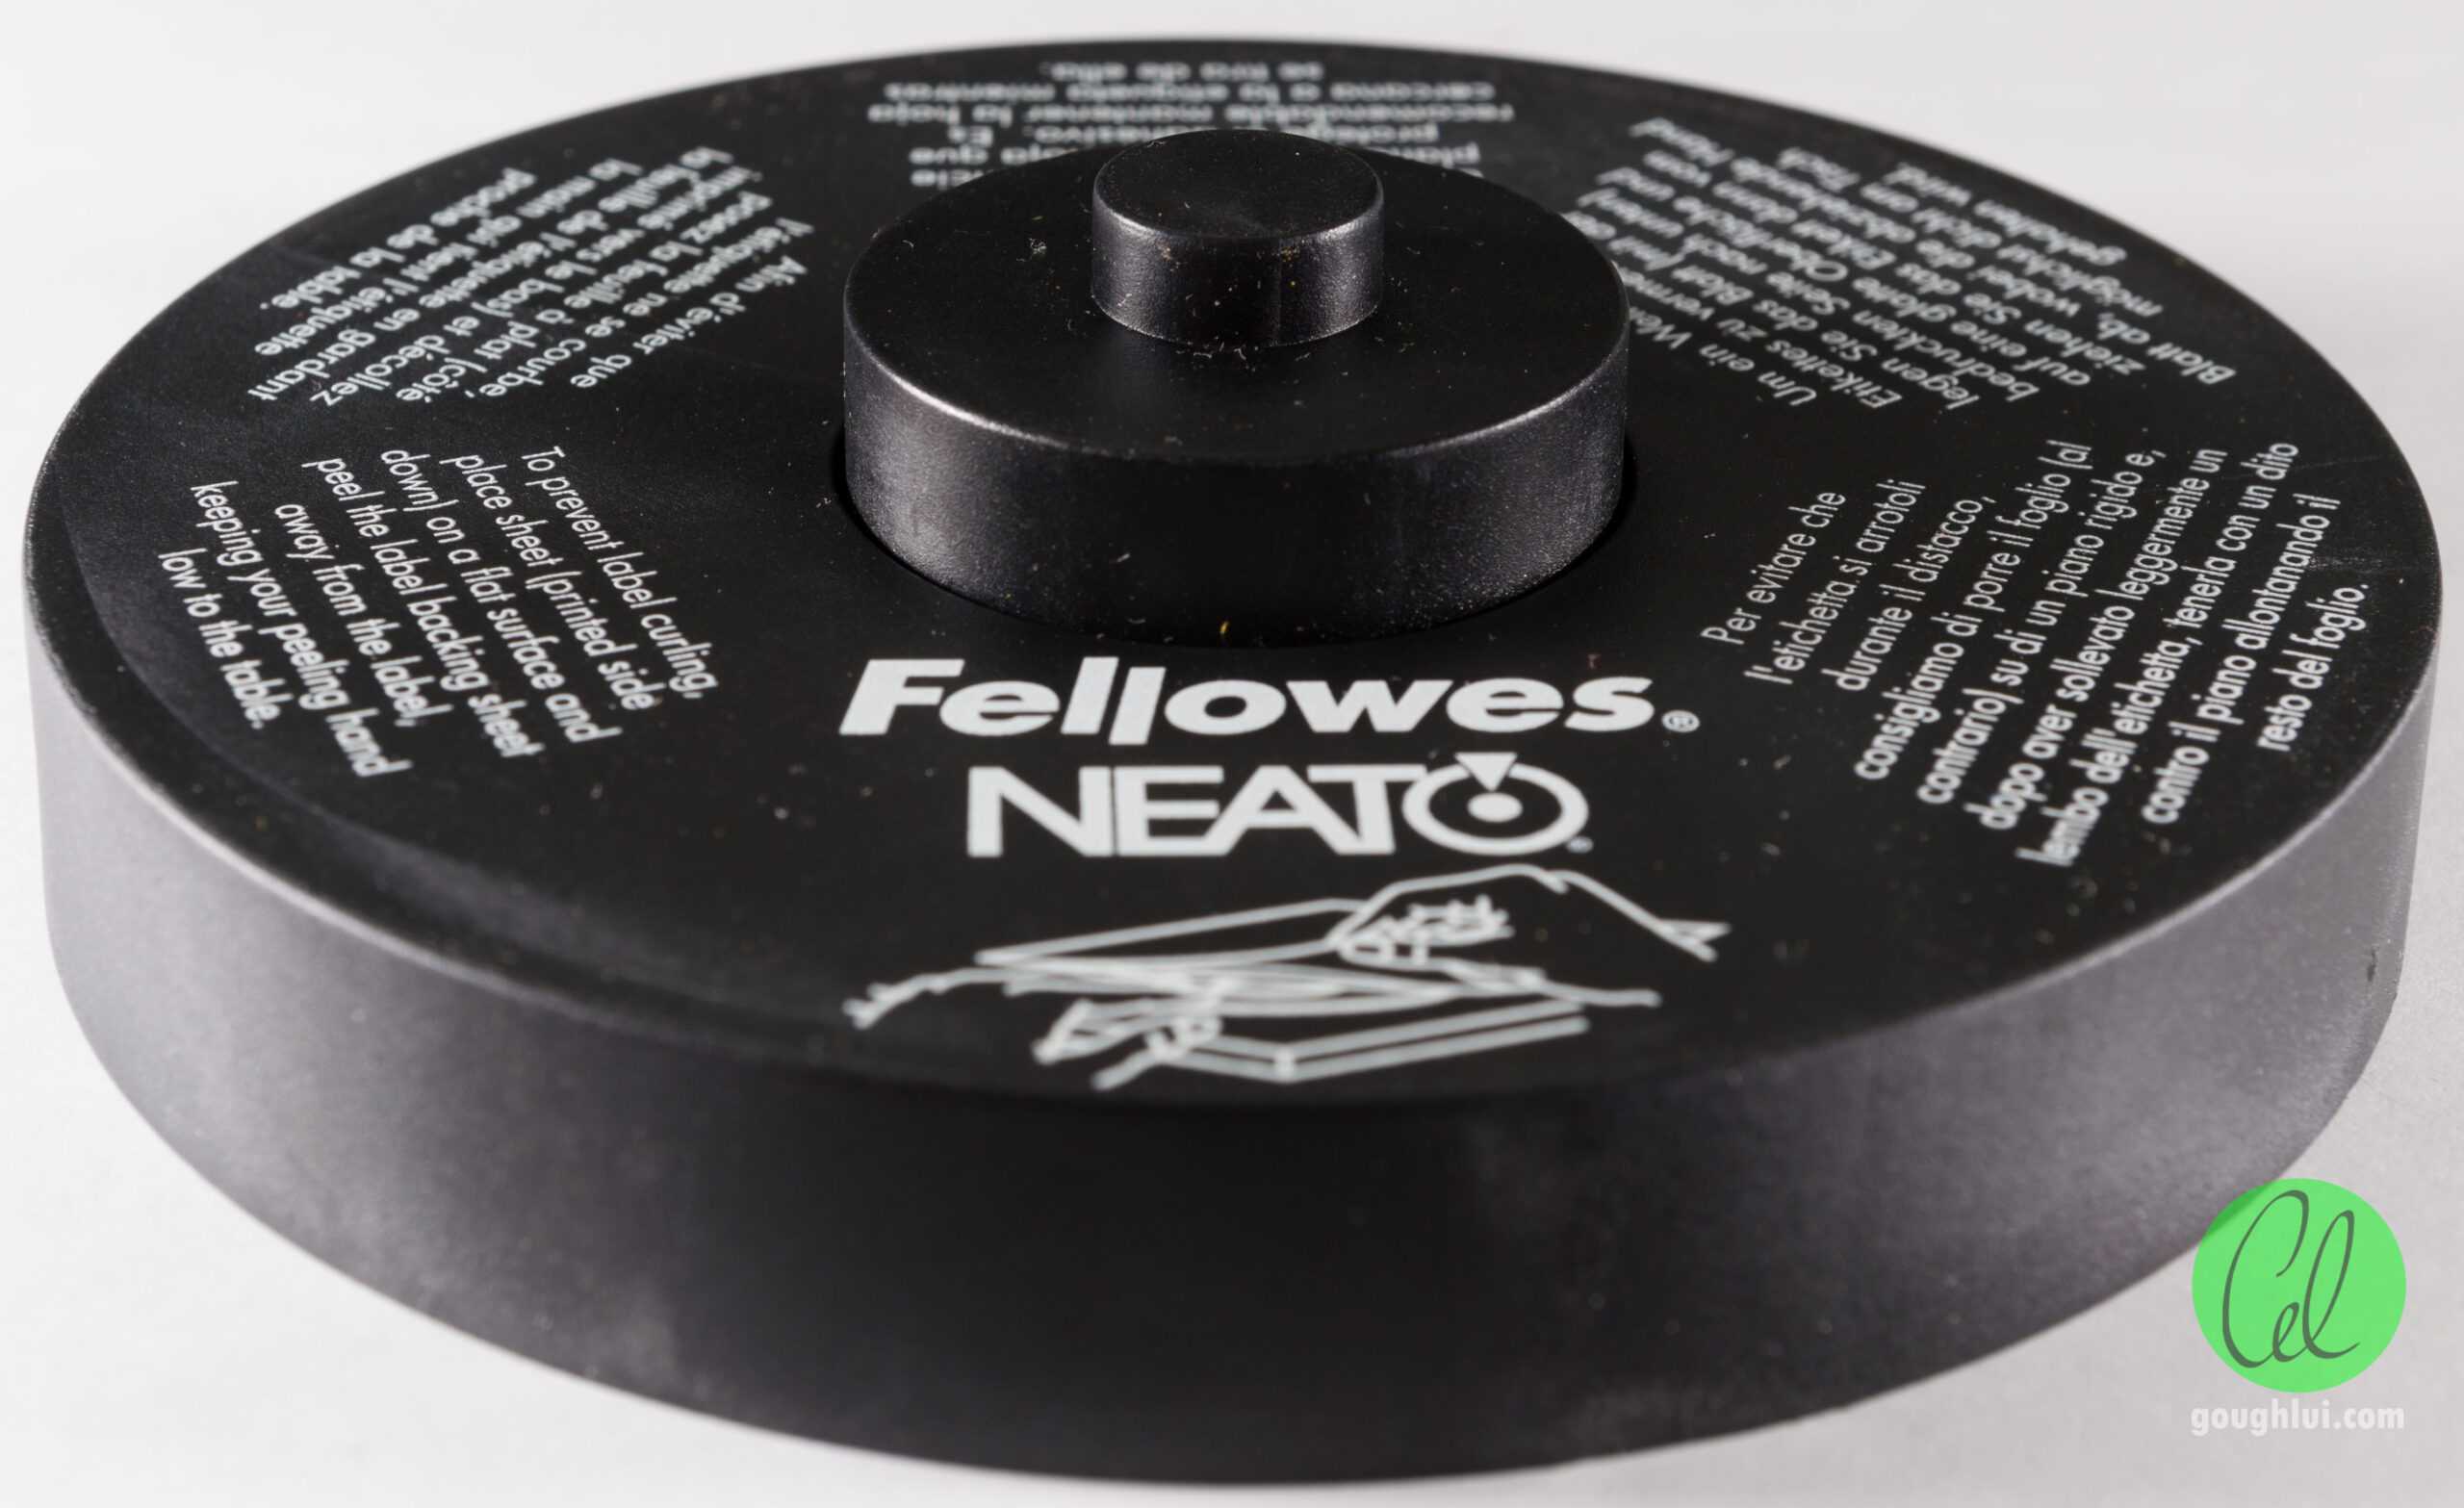 Tech Flashback: Fellowes Neato 2000 Cd Labeler Kit | Gough's With Fellowes Neato Cd Label Template